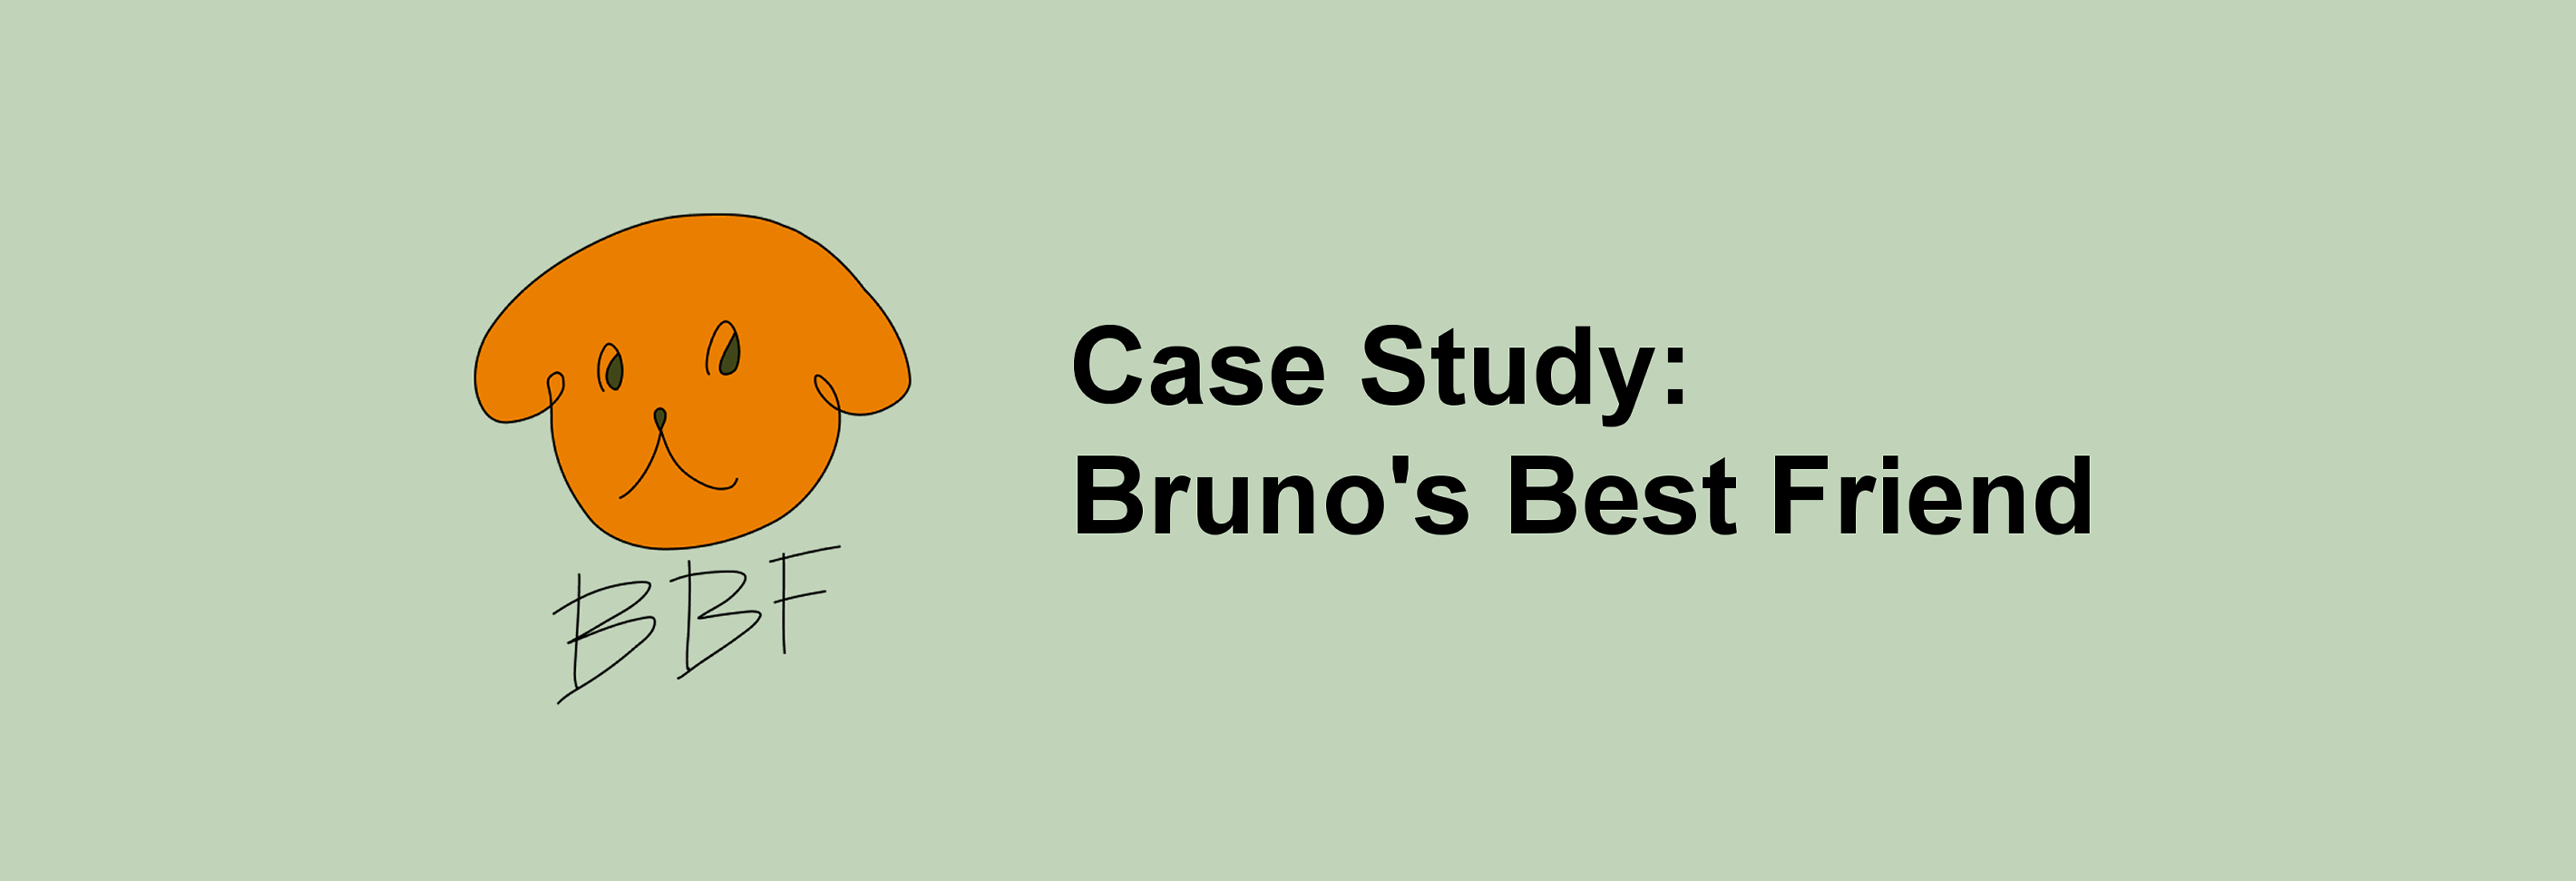 bruno's best friend banner